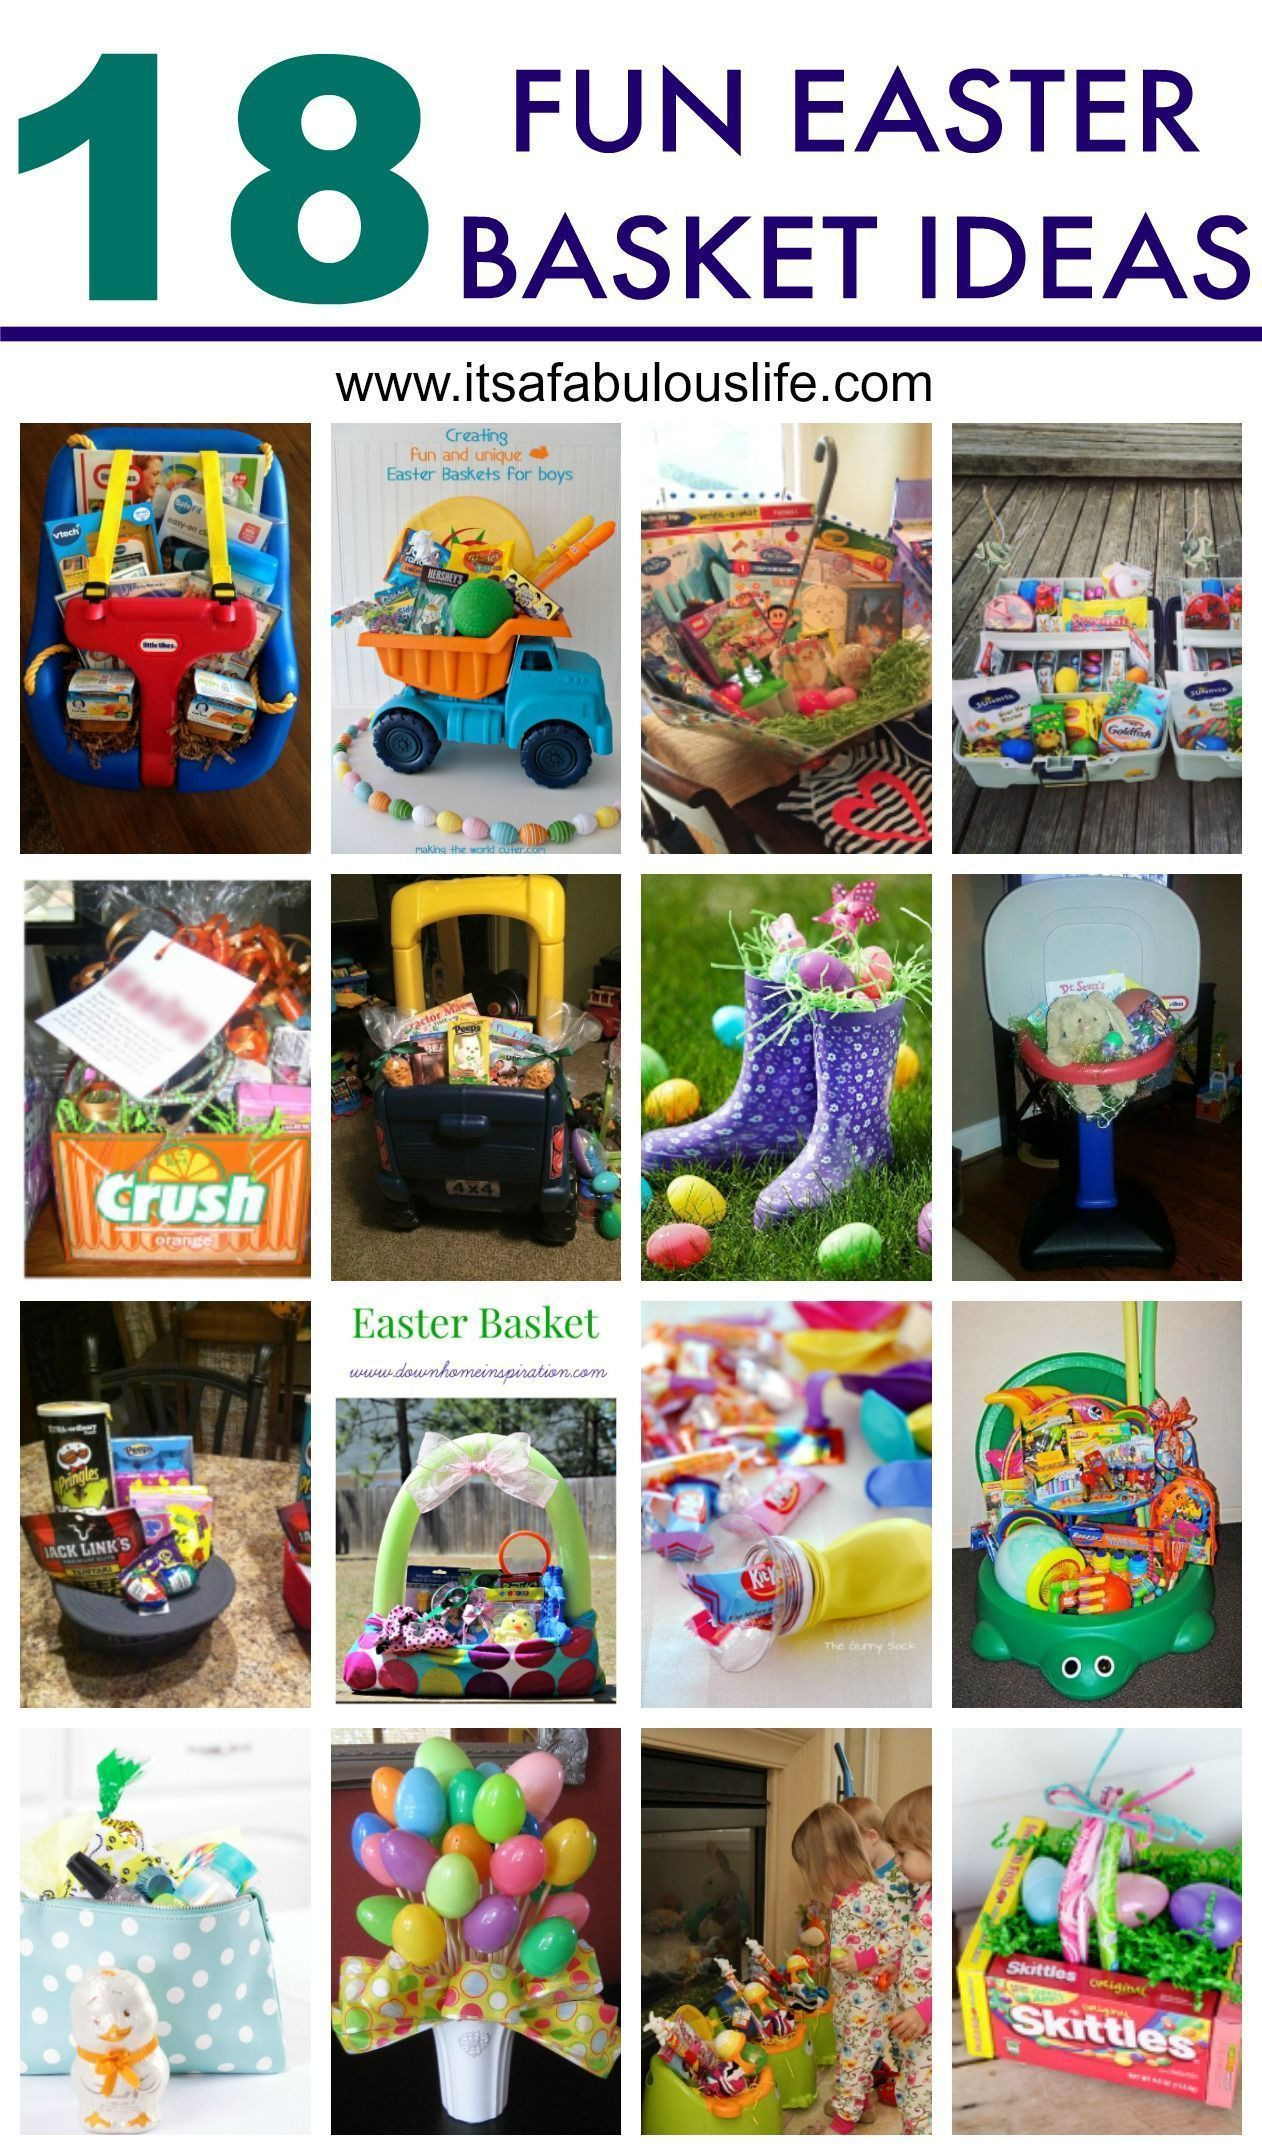 Alternative Easter Basket Ideas
 Easter Baskets Alternatives Birthdays alternatives